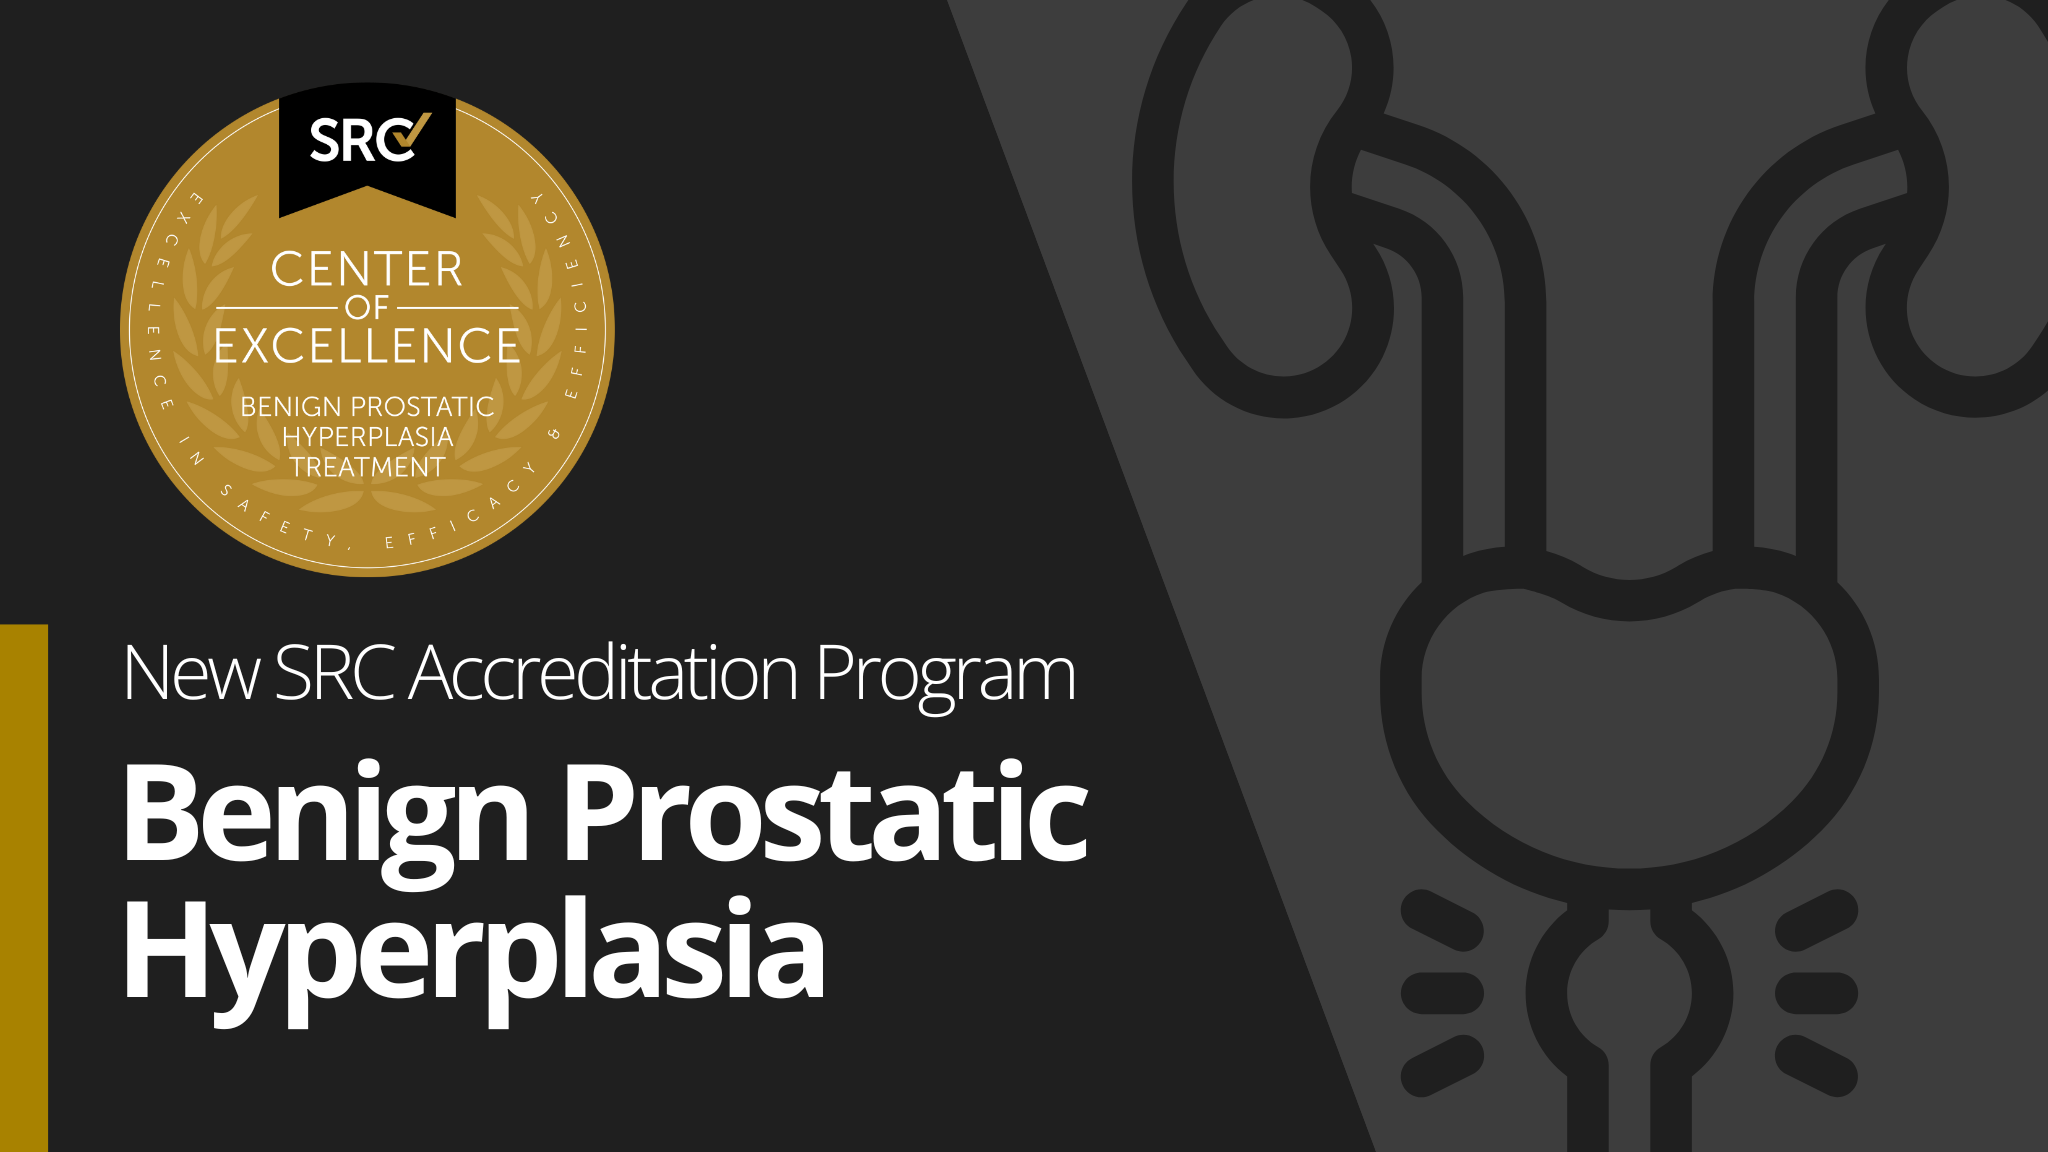 New SRC Accreditation Program: Benign Prostatic Hyperplasia